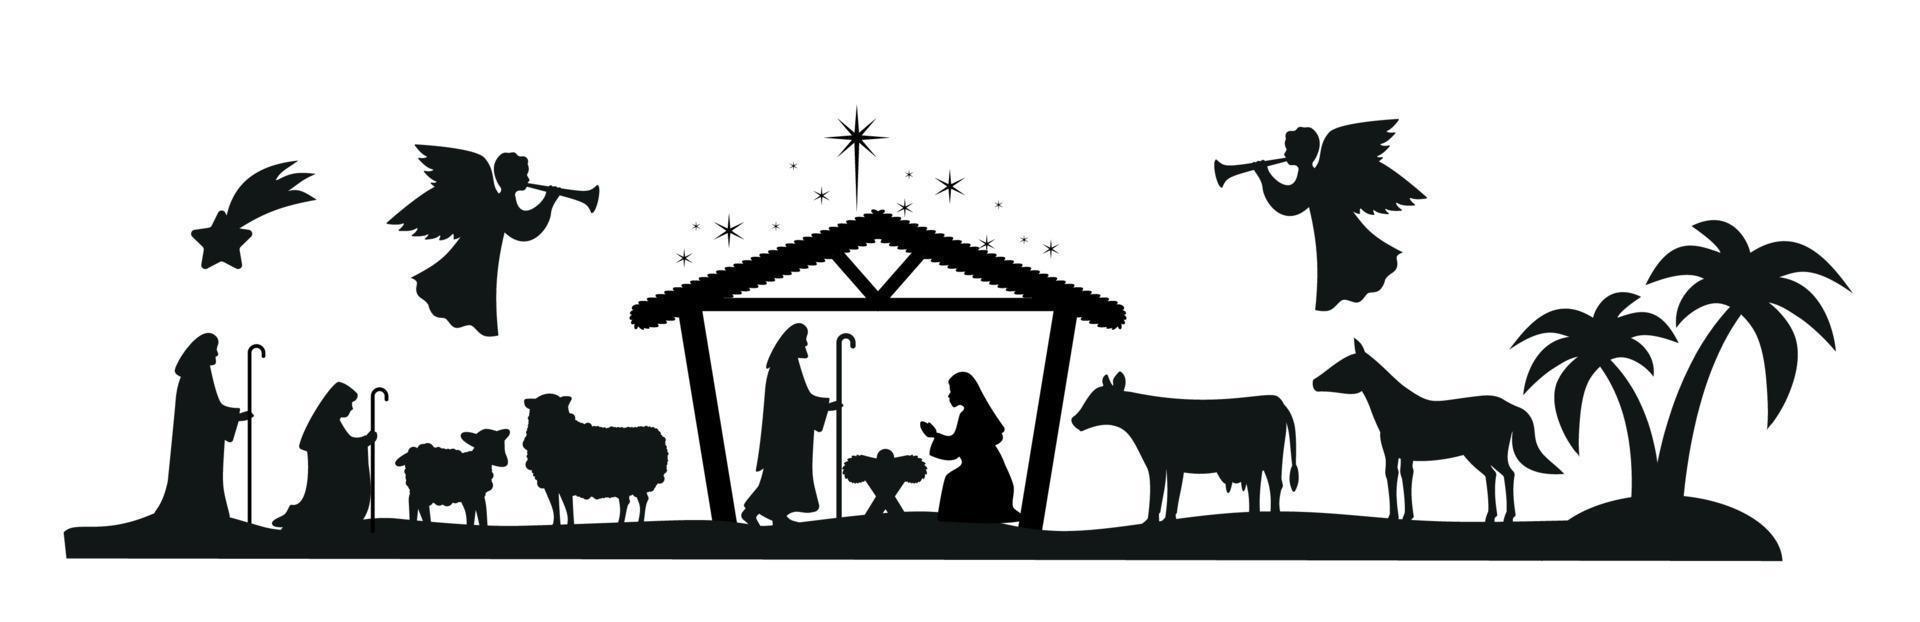 weihnachtskrippe mit jesuskind, maria und joseph in der krippe.traditionelle christliche weihnachtsgeschichte. vektorillustration für kinder. Folge 10 vektor